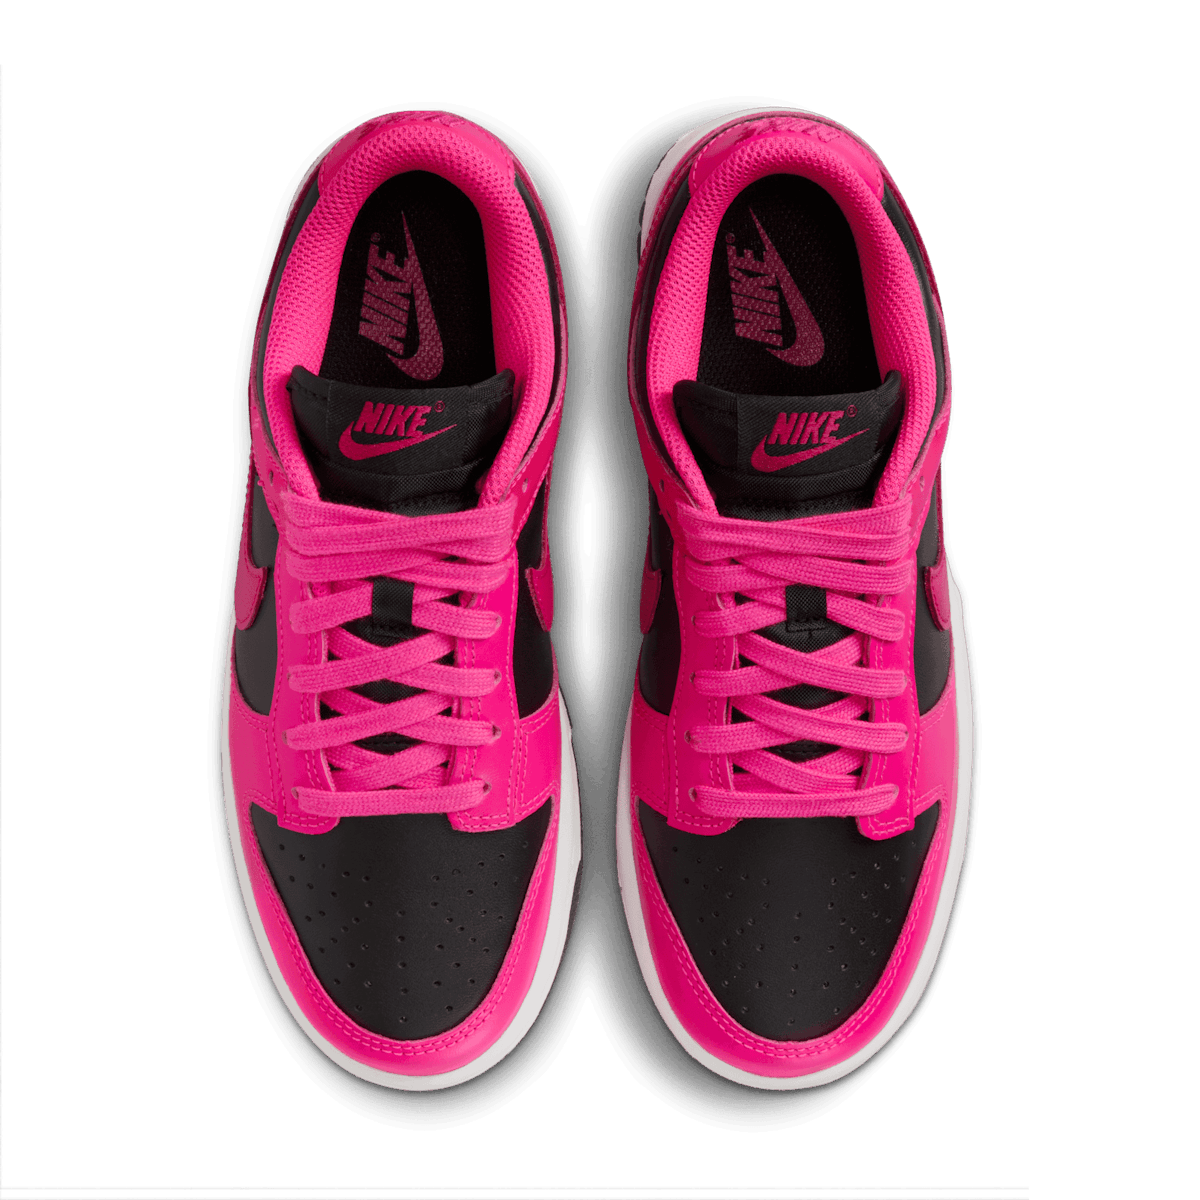 Nike Dunk Low Fierce Pink Black (W) - DD1503-604 Raffles and Release Date